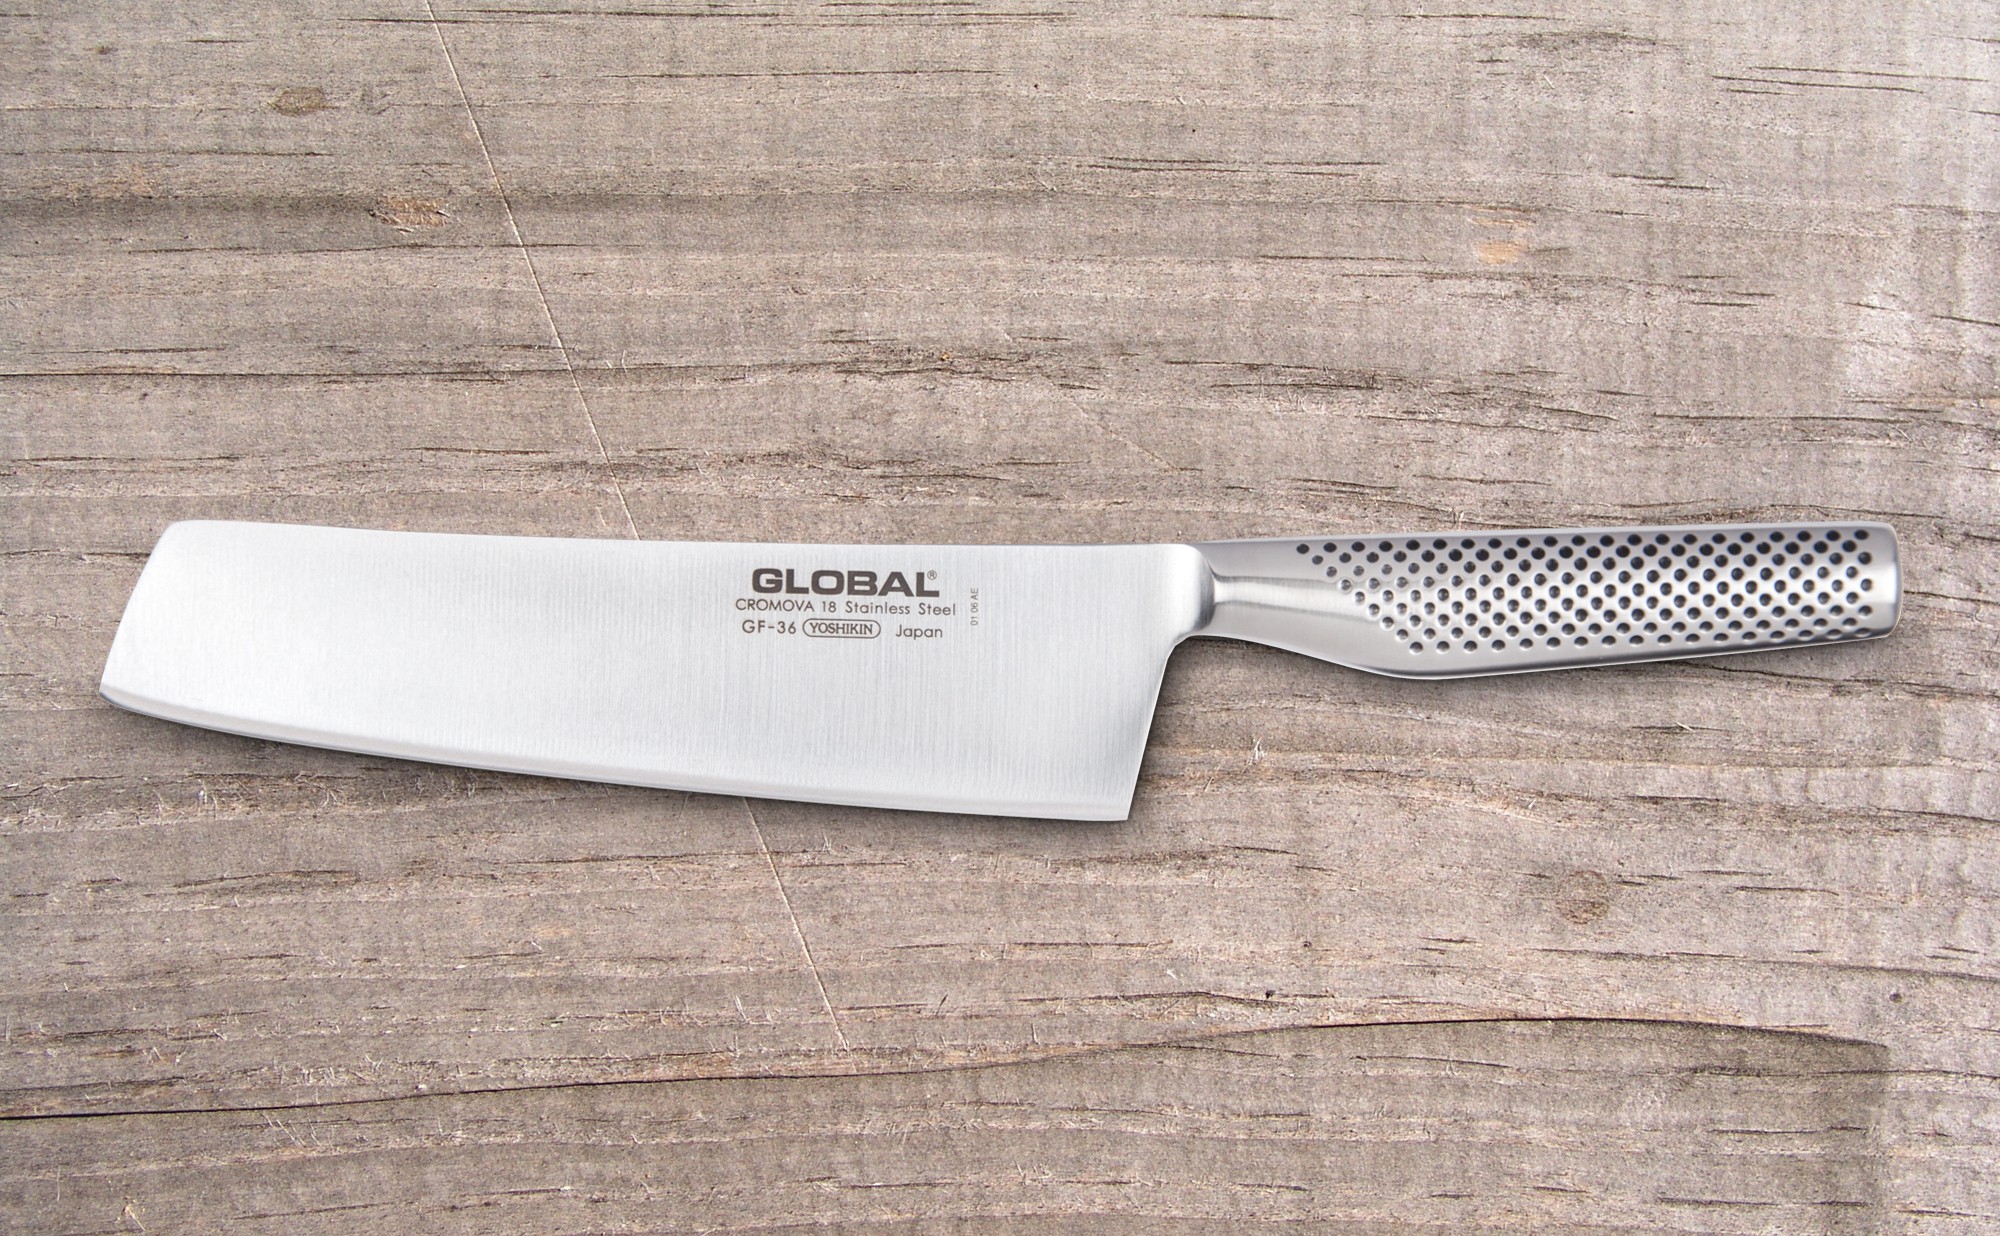 Global knives - GF36 - Vegetable Knife - 20cm - kitchen knife